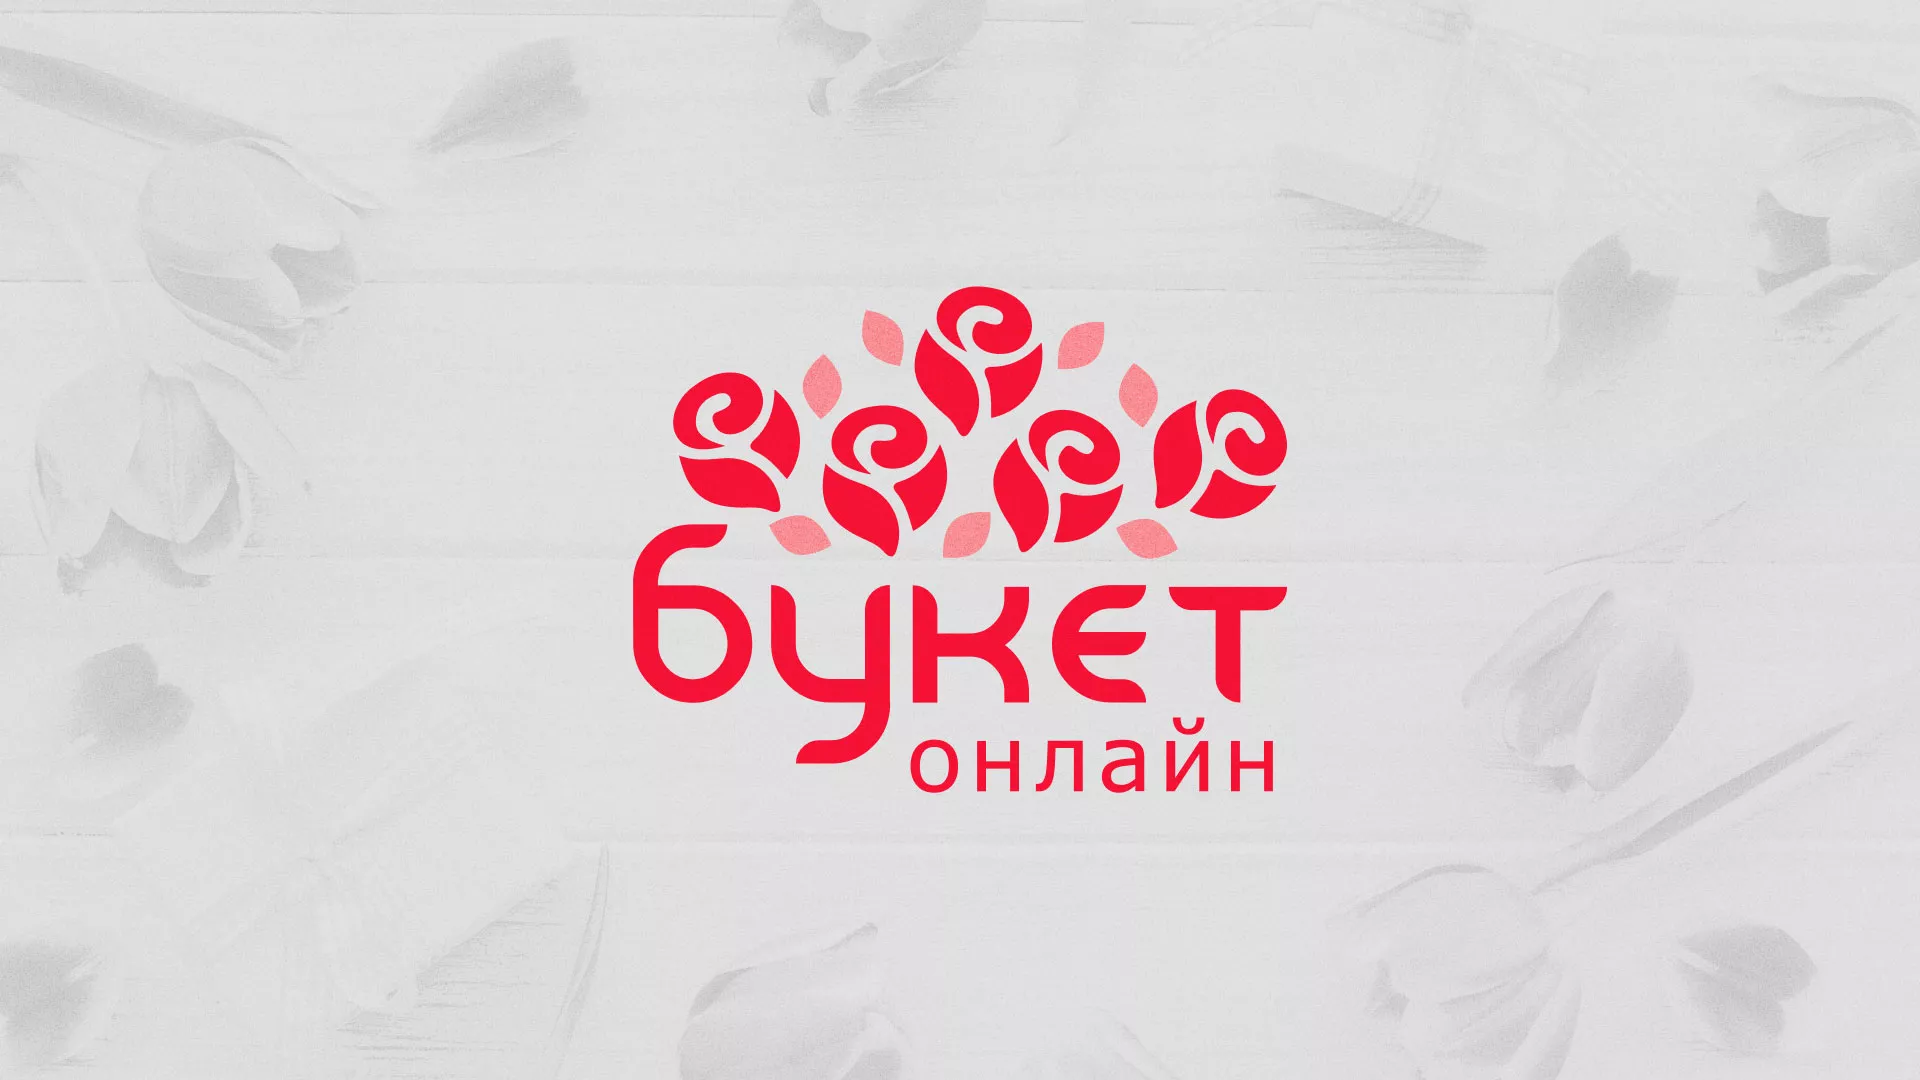 Создание интернет-магазина «Букет-онлайн» по цветам в Чернушке